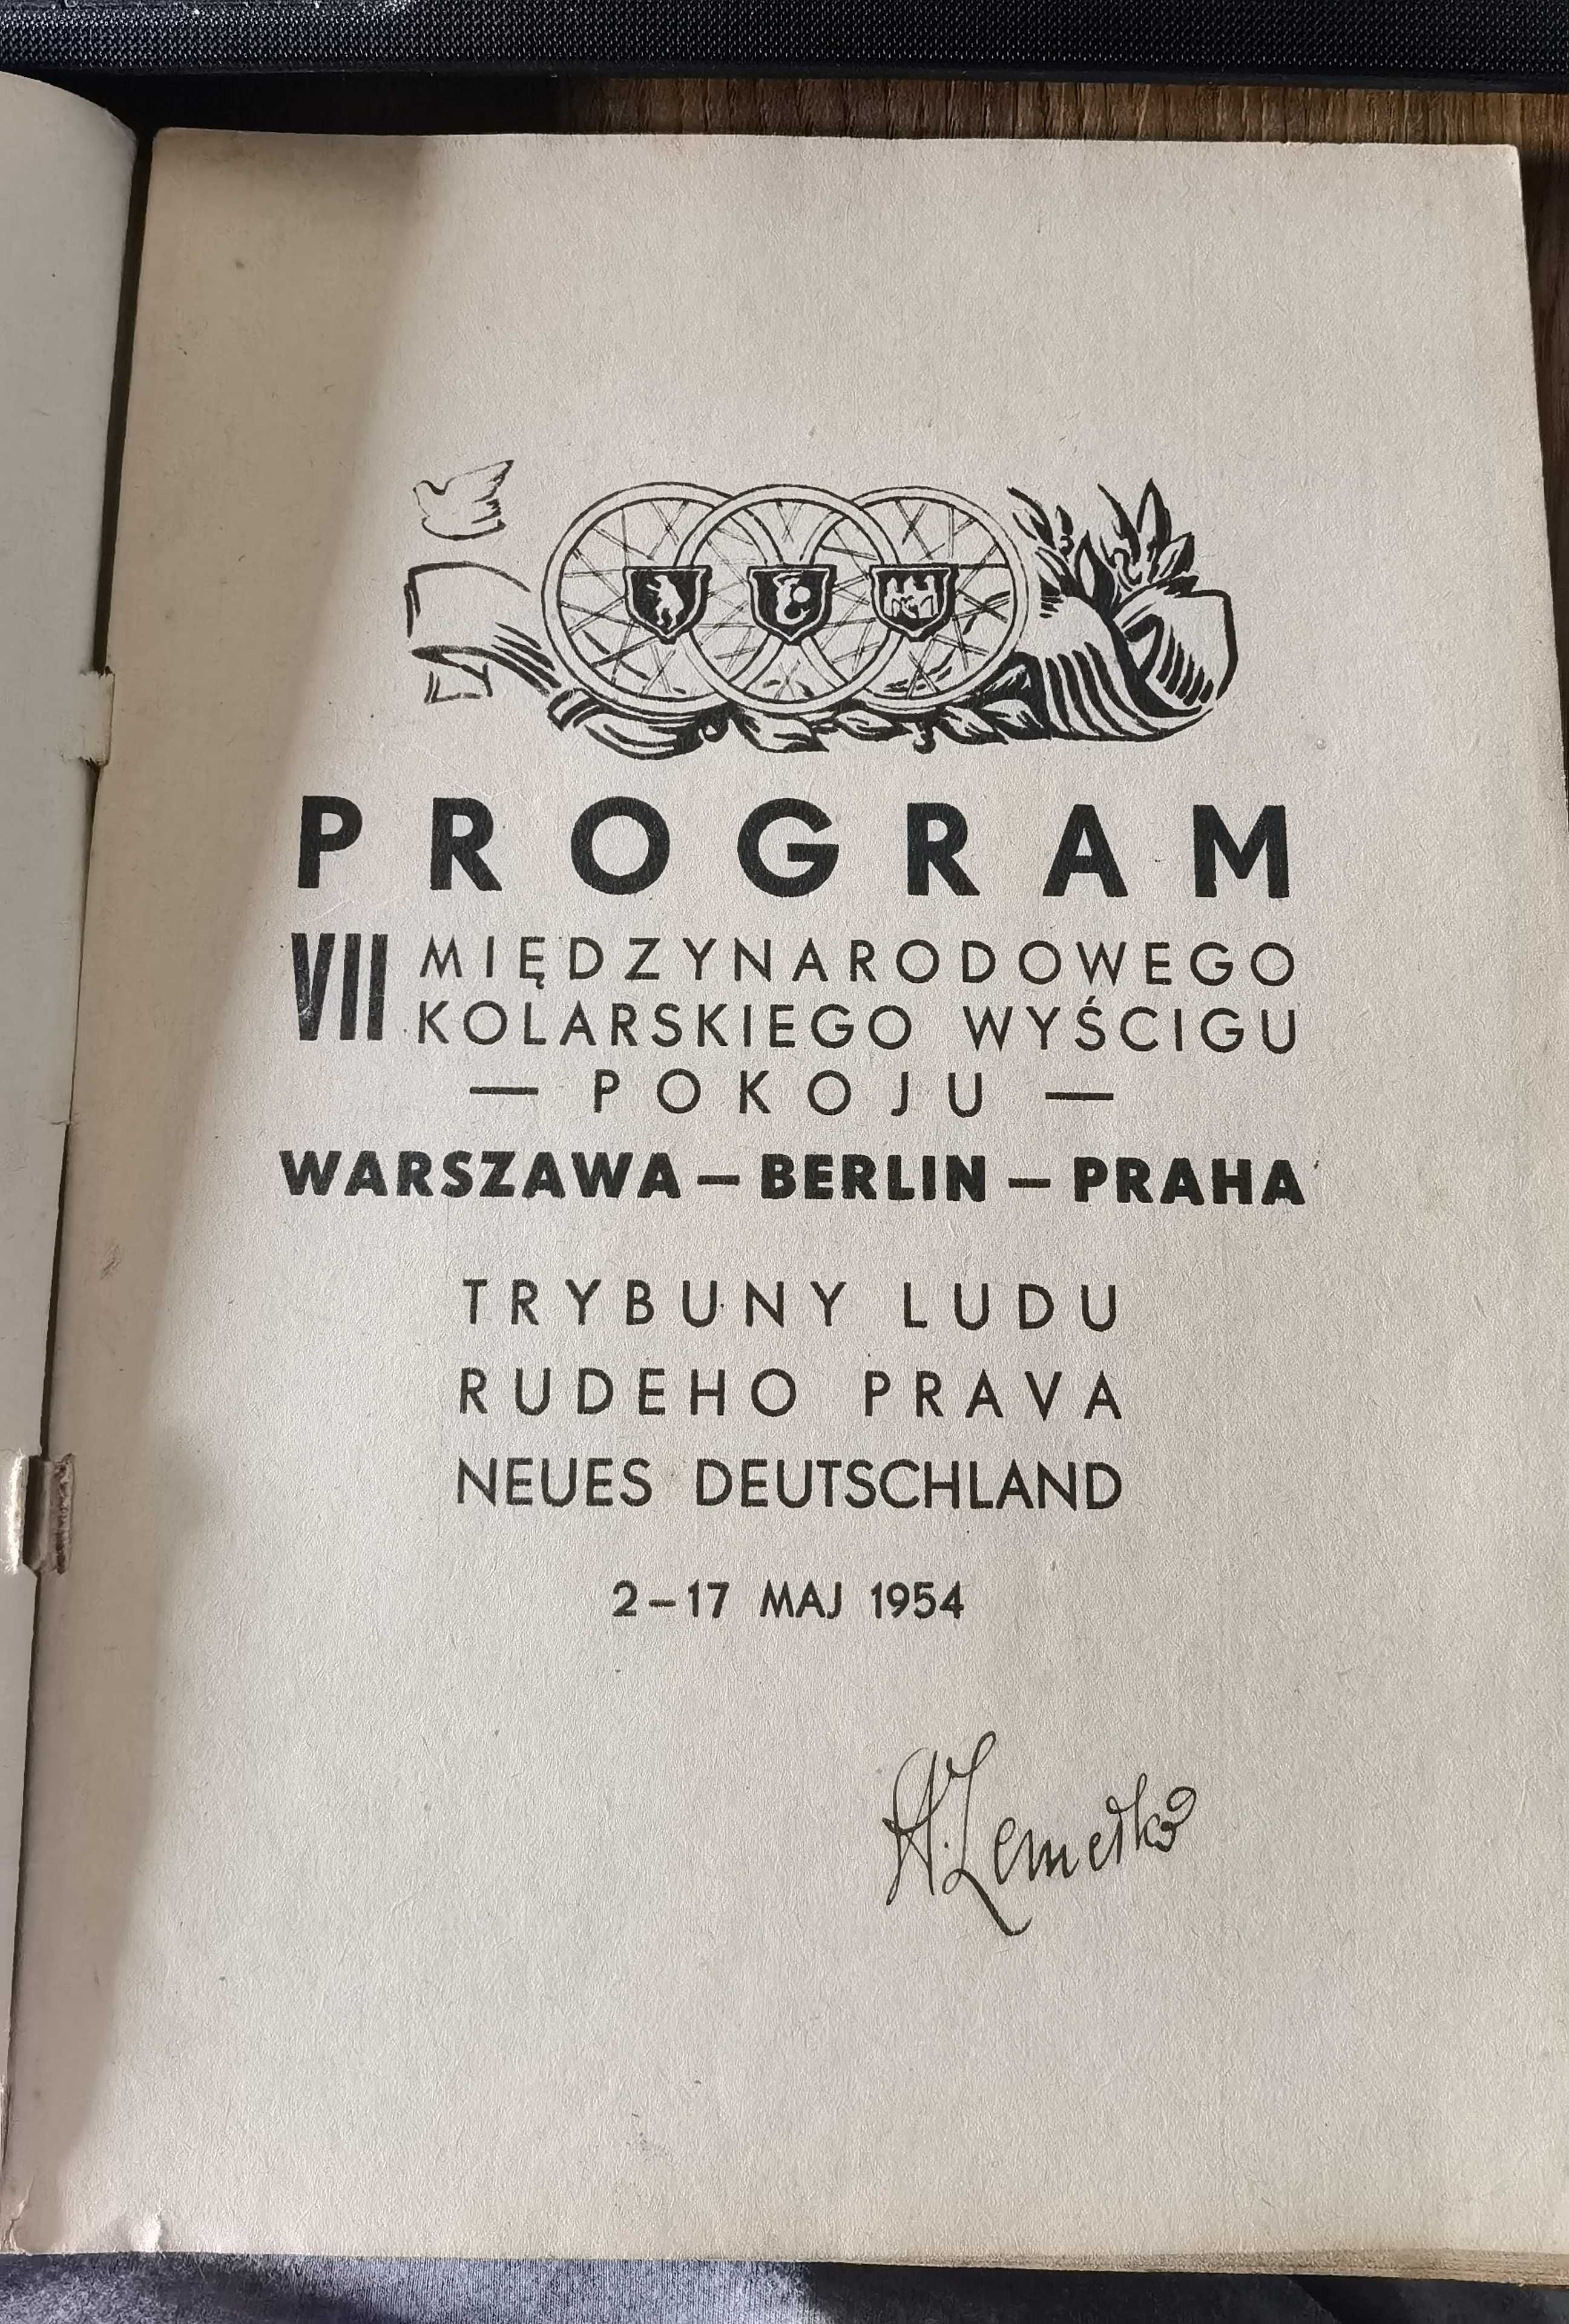 VII wyscig pokoju berlin warszawa praga 1954 program